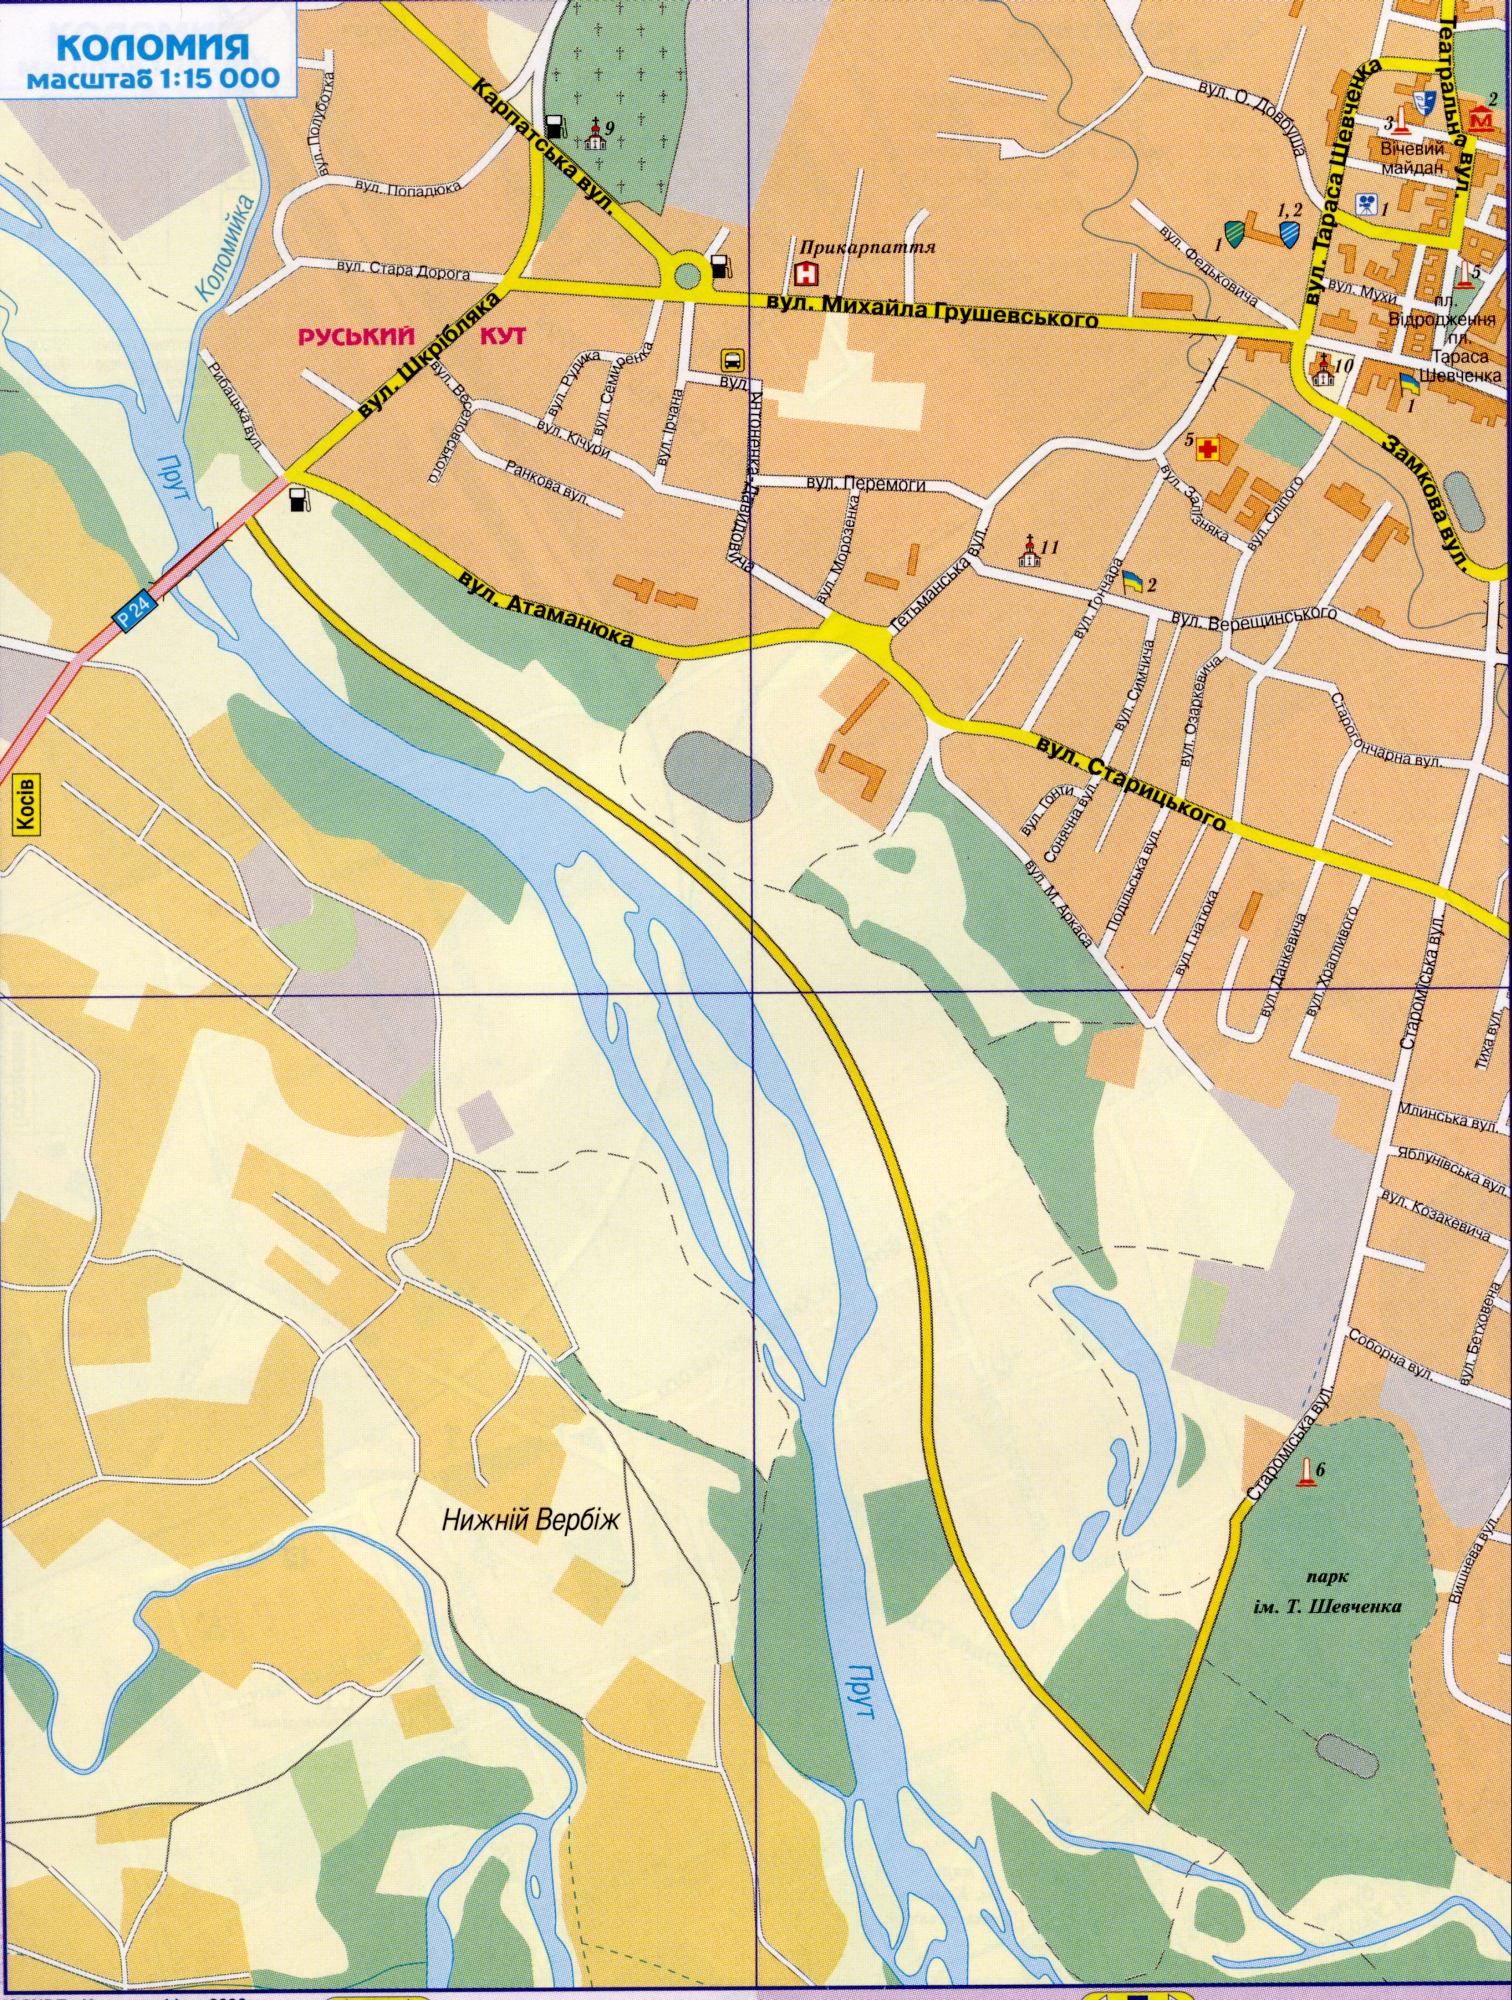 Karte Coloma undetailed, die Hauptstraßen g.Kolomyya Region Iwano-Frankiwsk Schema. Kostenlos herunterladen